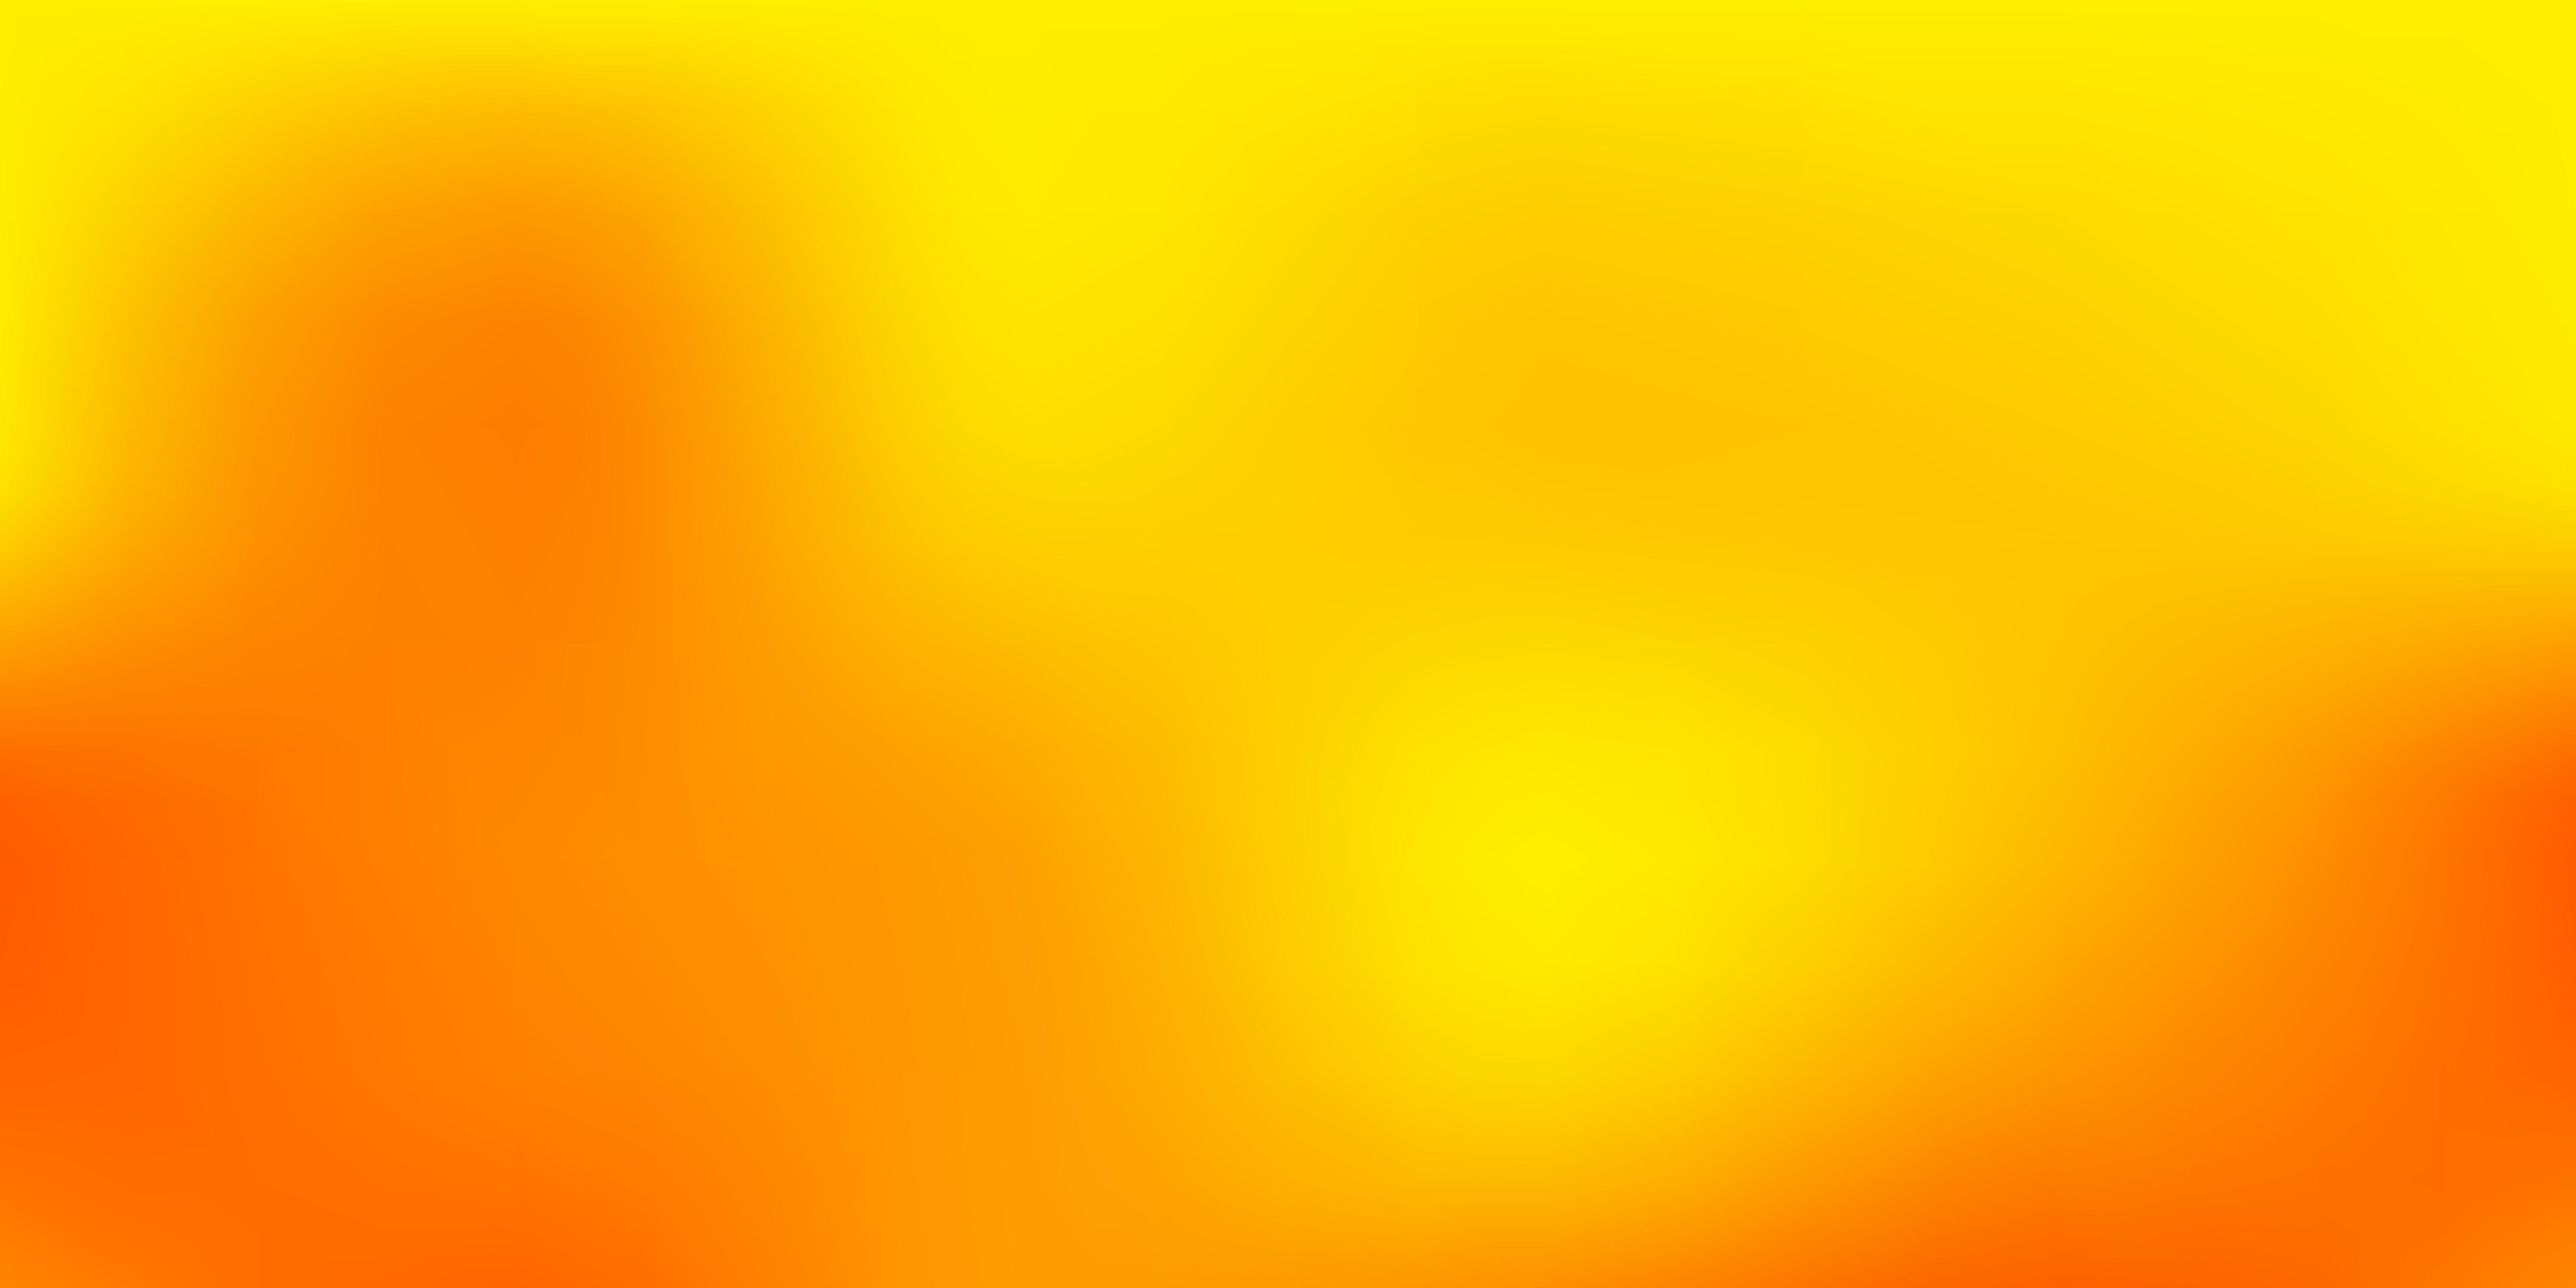 Dark Yellow vector blurred background. 1841293 Vector Art at Vecteezy